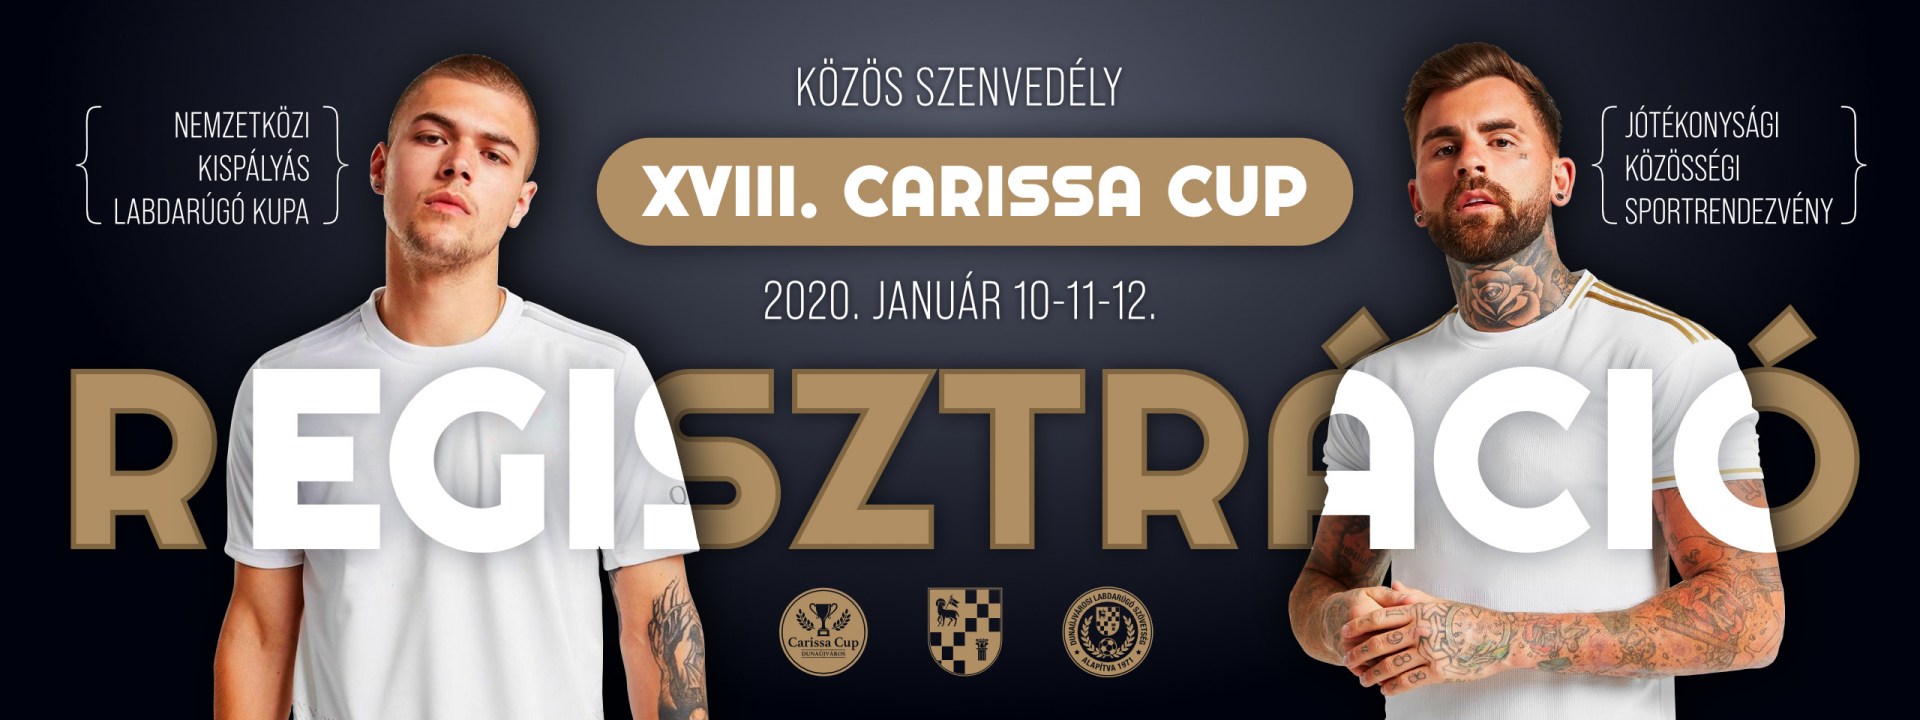 Carissa Kupa 2020 Nemzetközi Pénzdíjas Foci Kupa